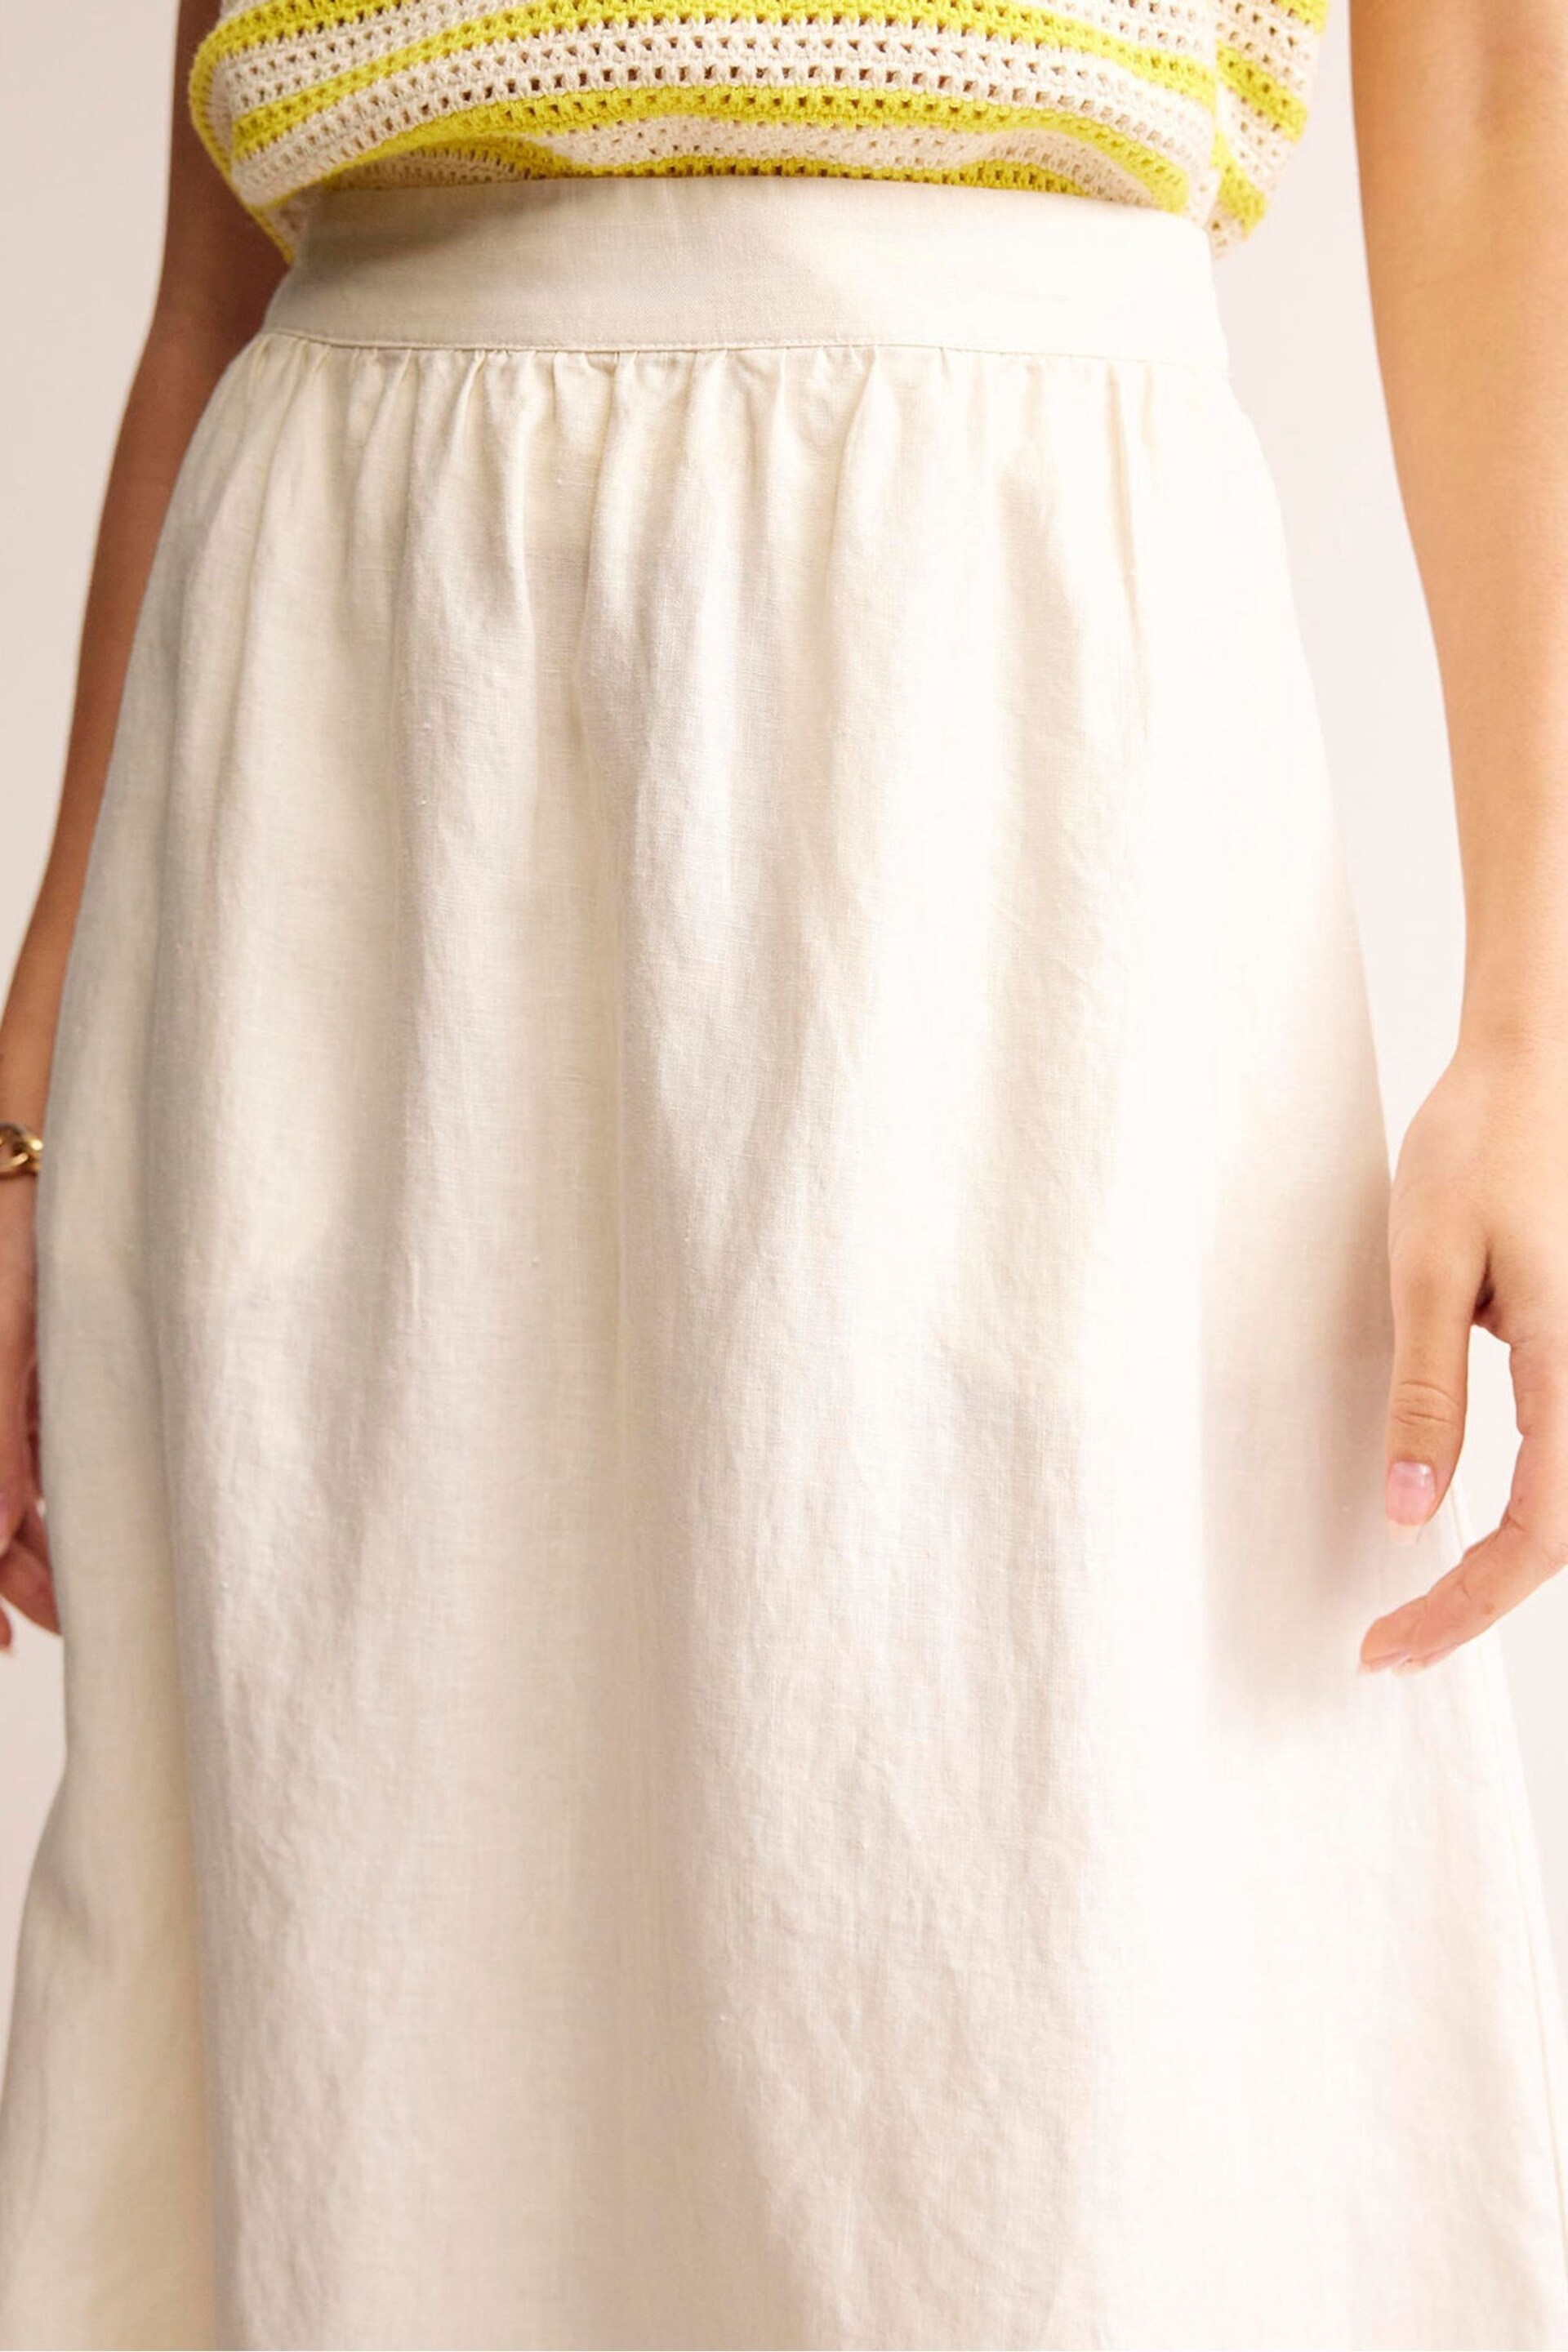 Boden Cream Florence Linen Midi Skirt - Image 2 of 5